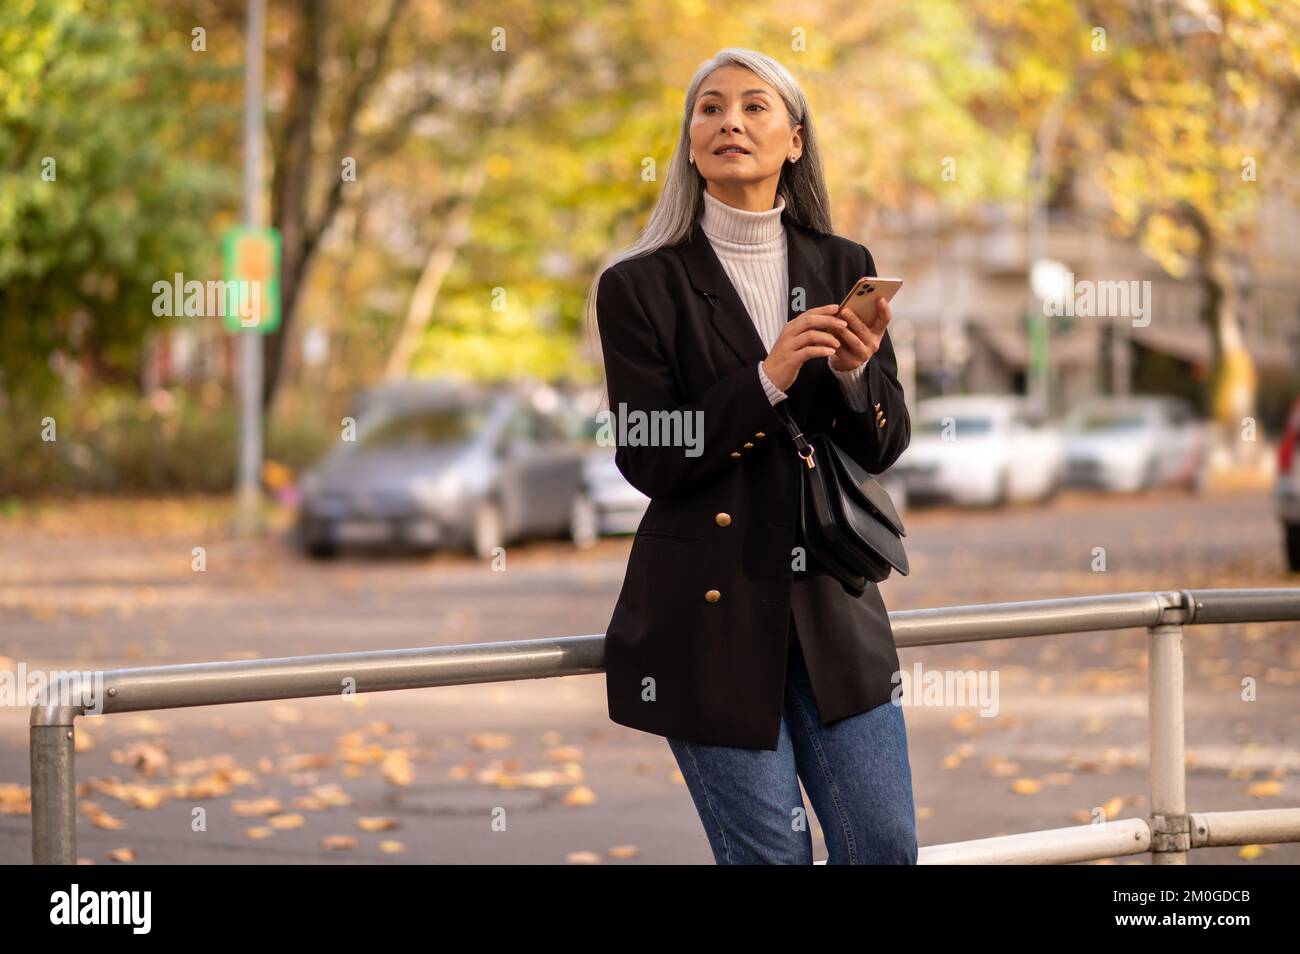 Mujer de pelo largo con un abrigo negro esperando a alguien en la calle Foto de stock